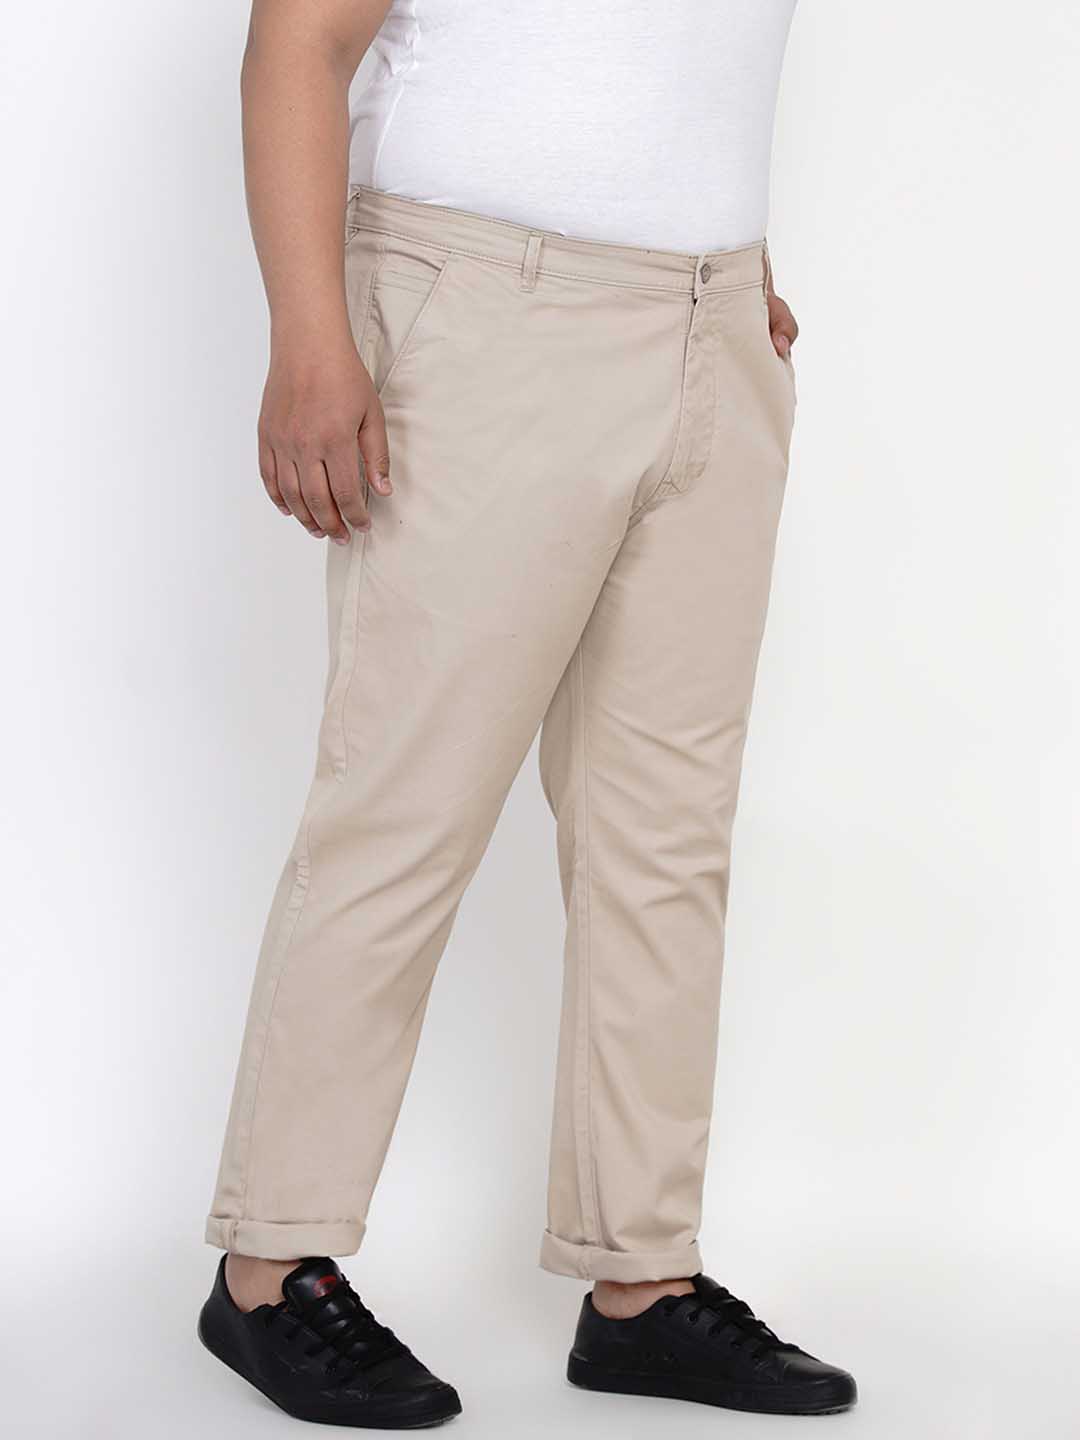 bottomwear/trousers/JPTR2195C/jptr2195c-5.jpg